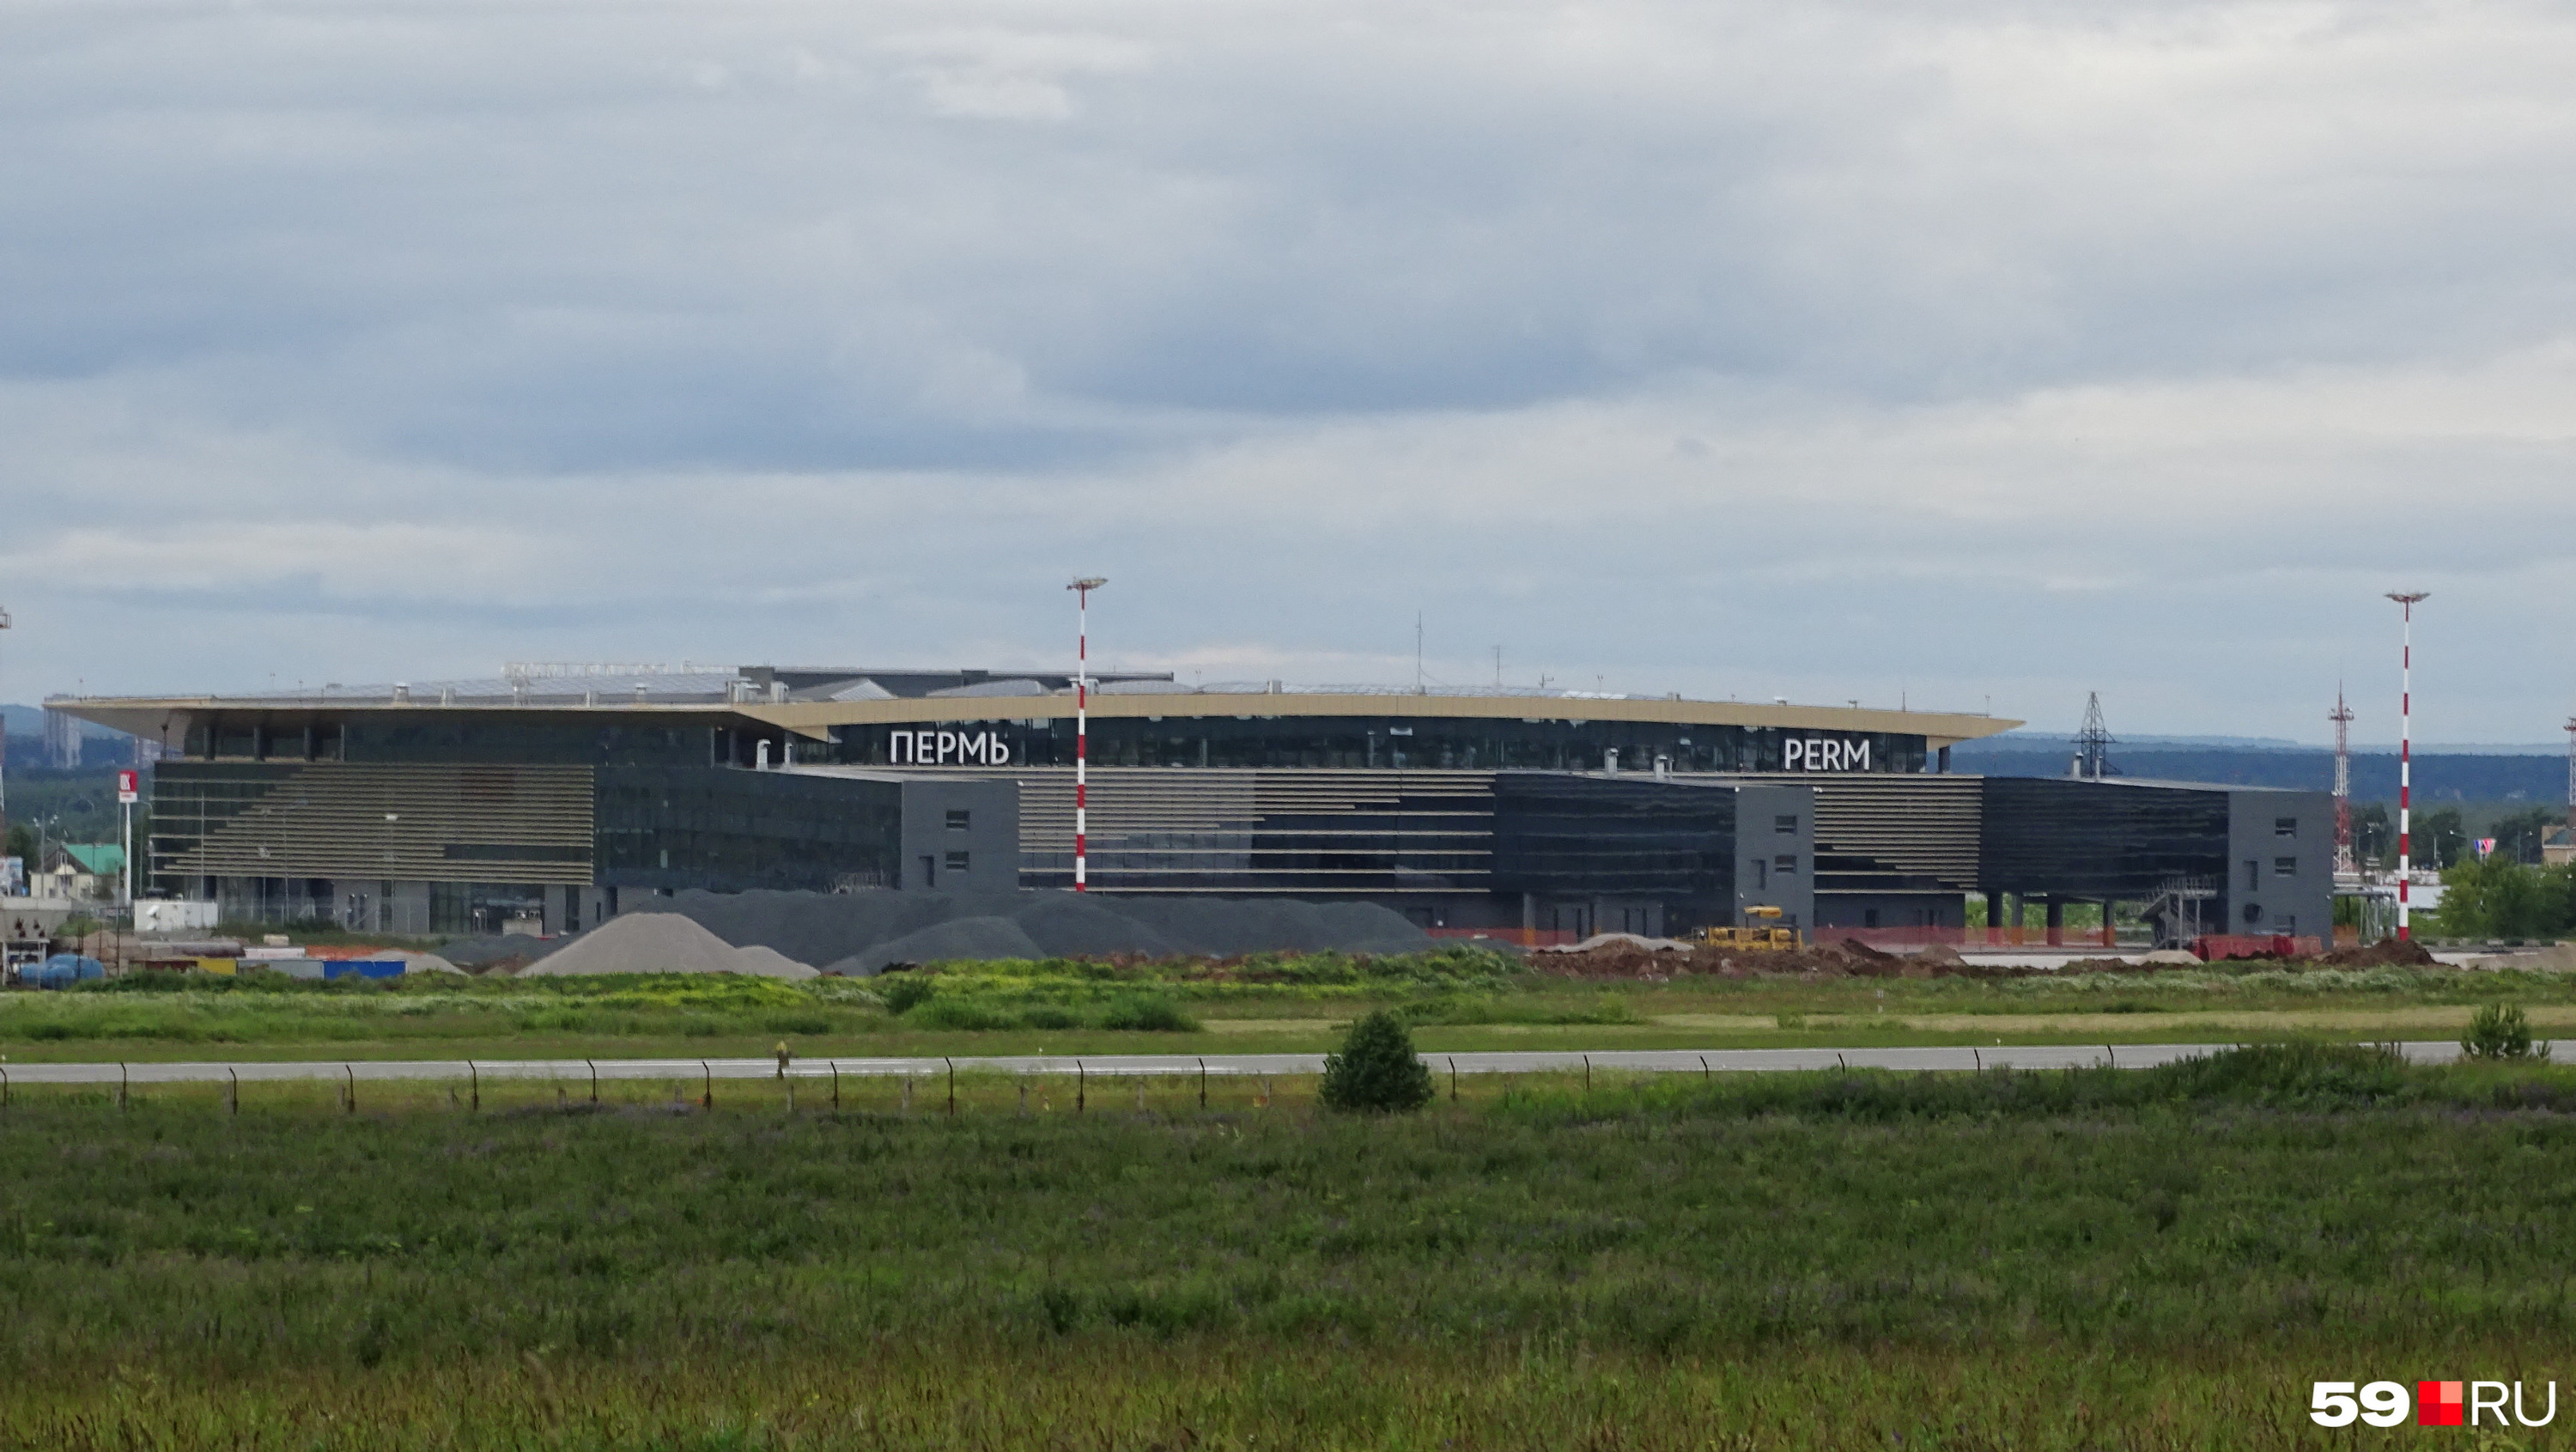 Горы строительных материалов возле перрона аэропорта в разгар реконструкции летом 2020 года было видно за несколько километров